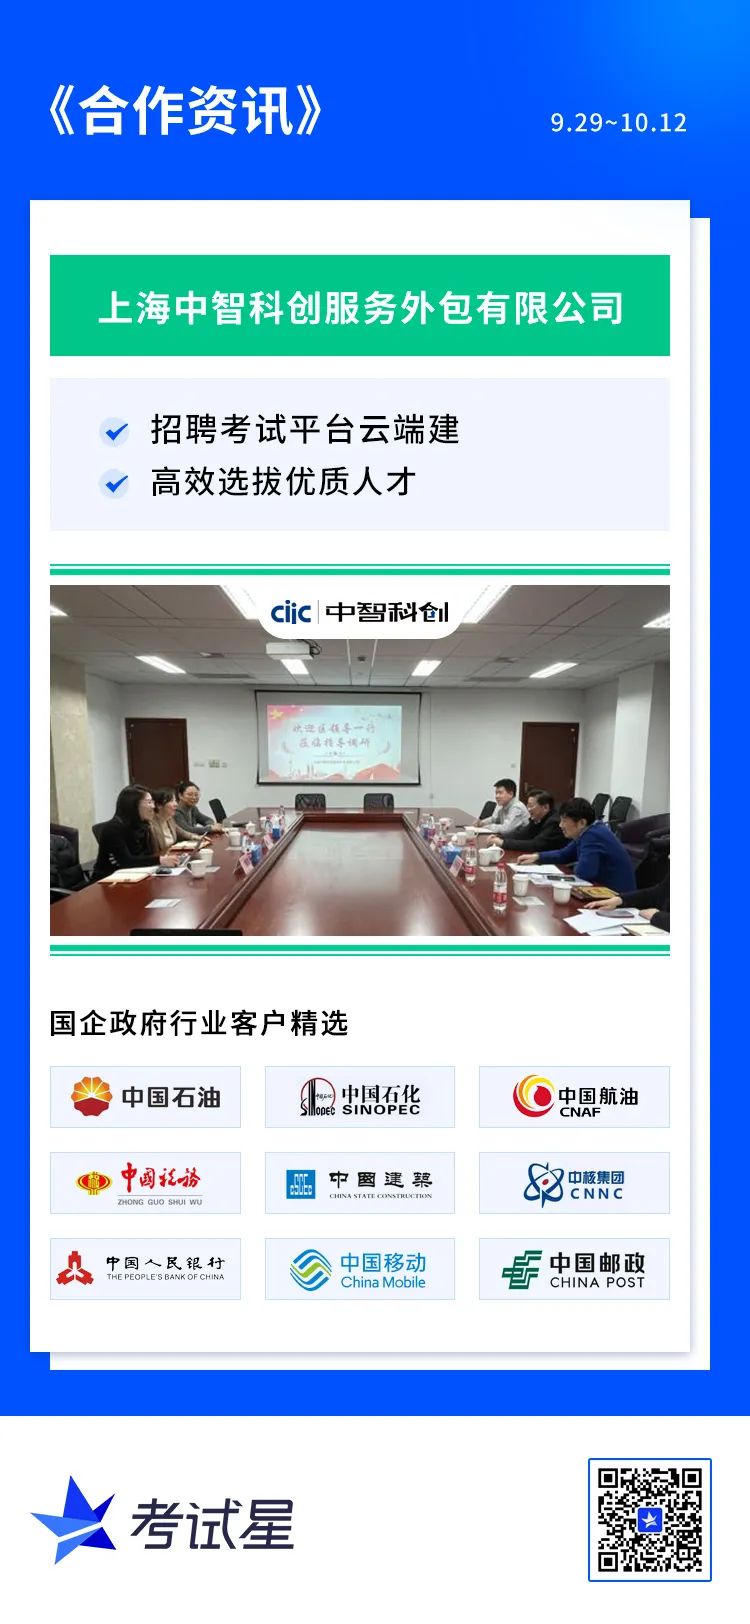 上海中智科创服务外包有限公司-招聘考试平台